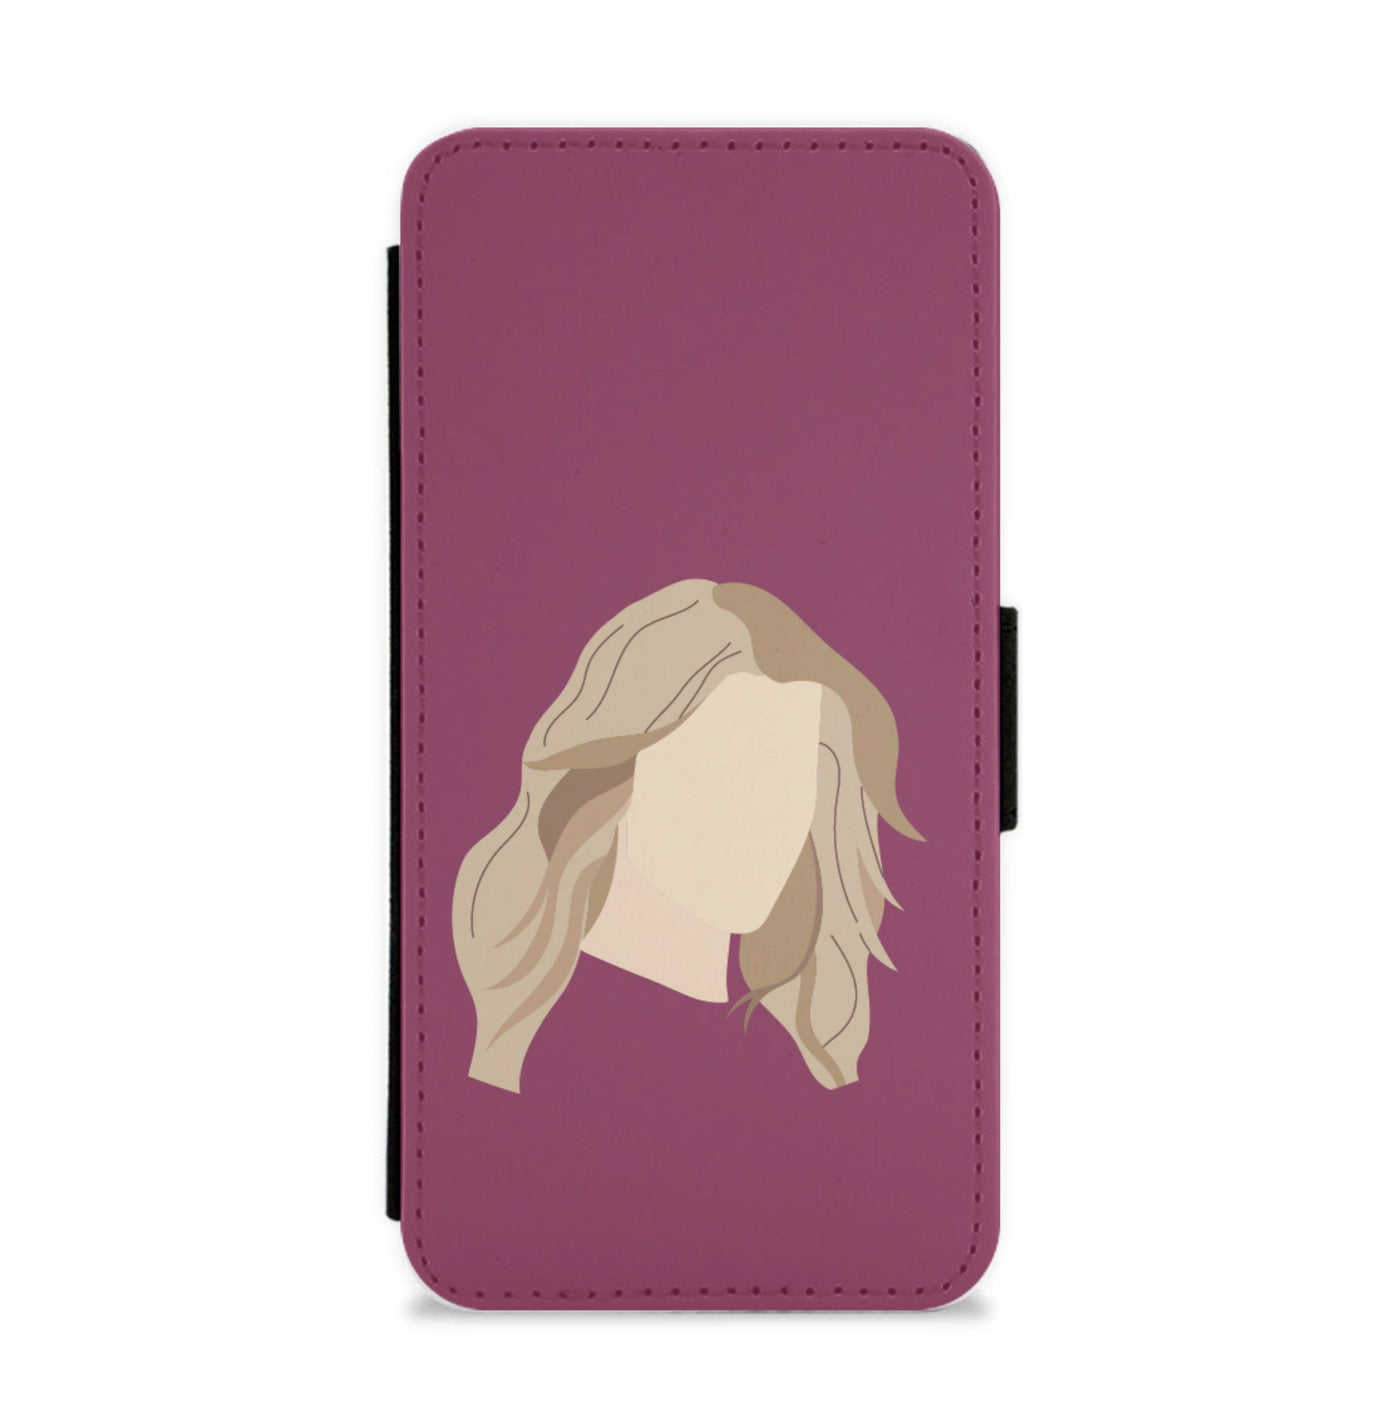 Rebekah Mikaelson - The Originals Flip / Wallet Phone Case